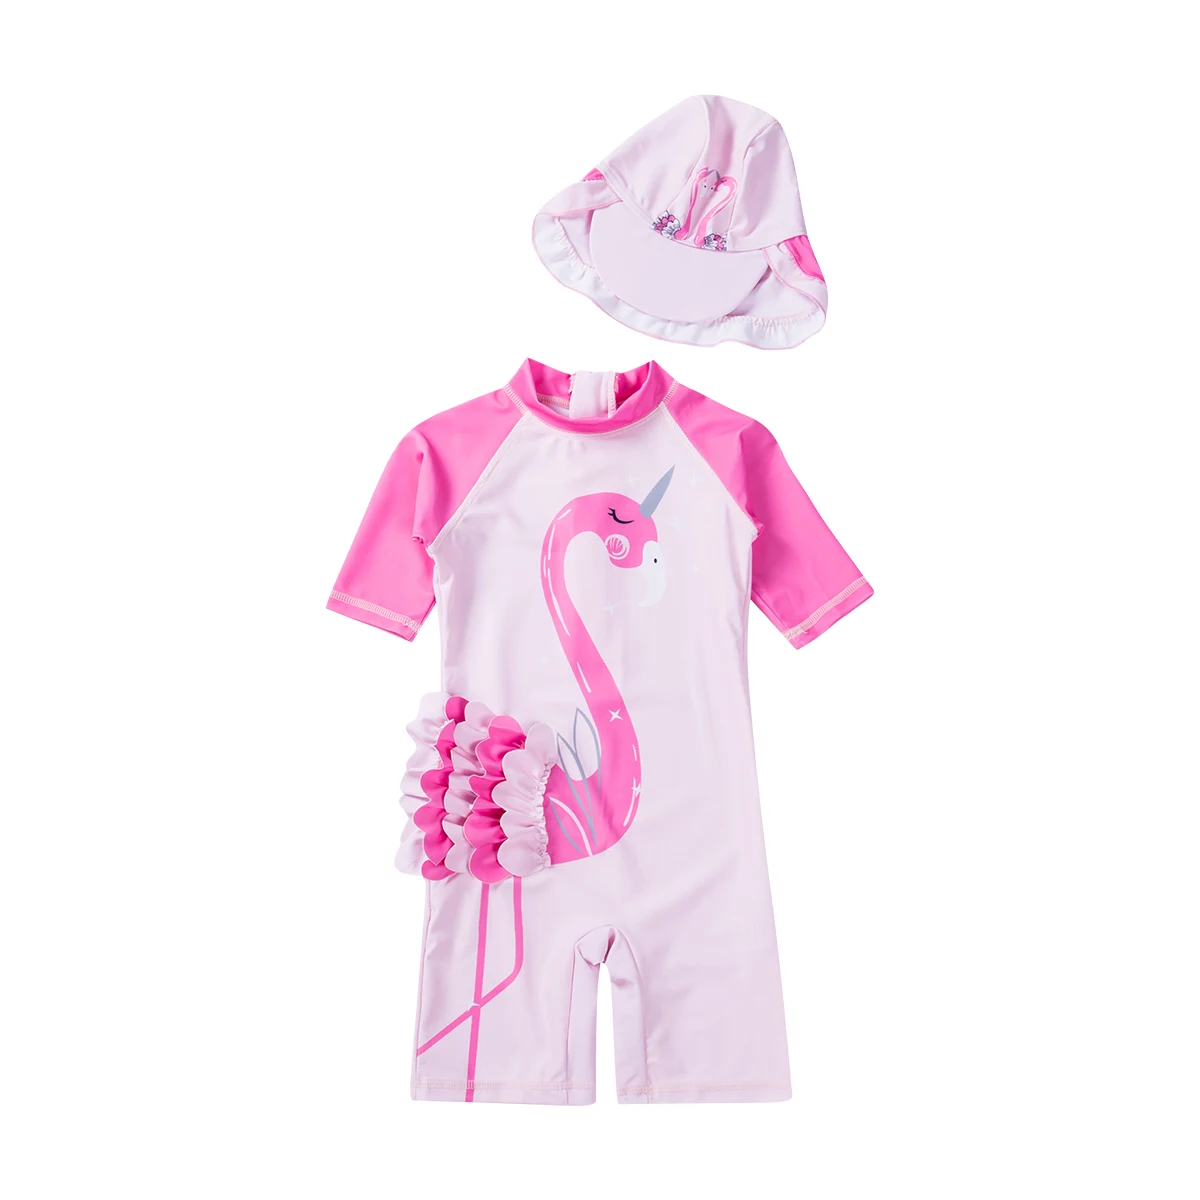 Детская одежда; купальник с оборками для девочек; купальный костюм с защитой от солнца; купальный костюм с фламинго для маленьких девочек; костюм для купания